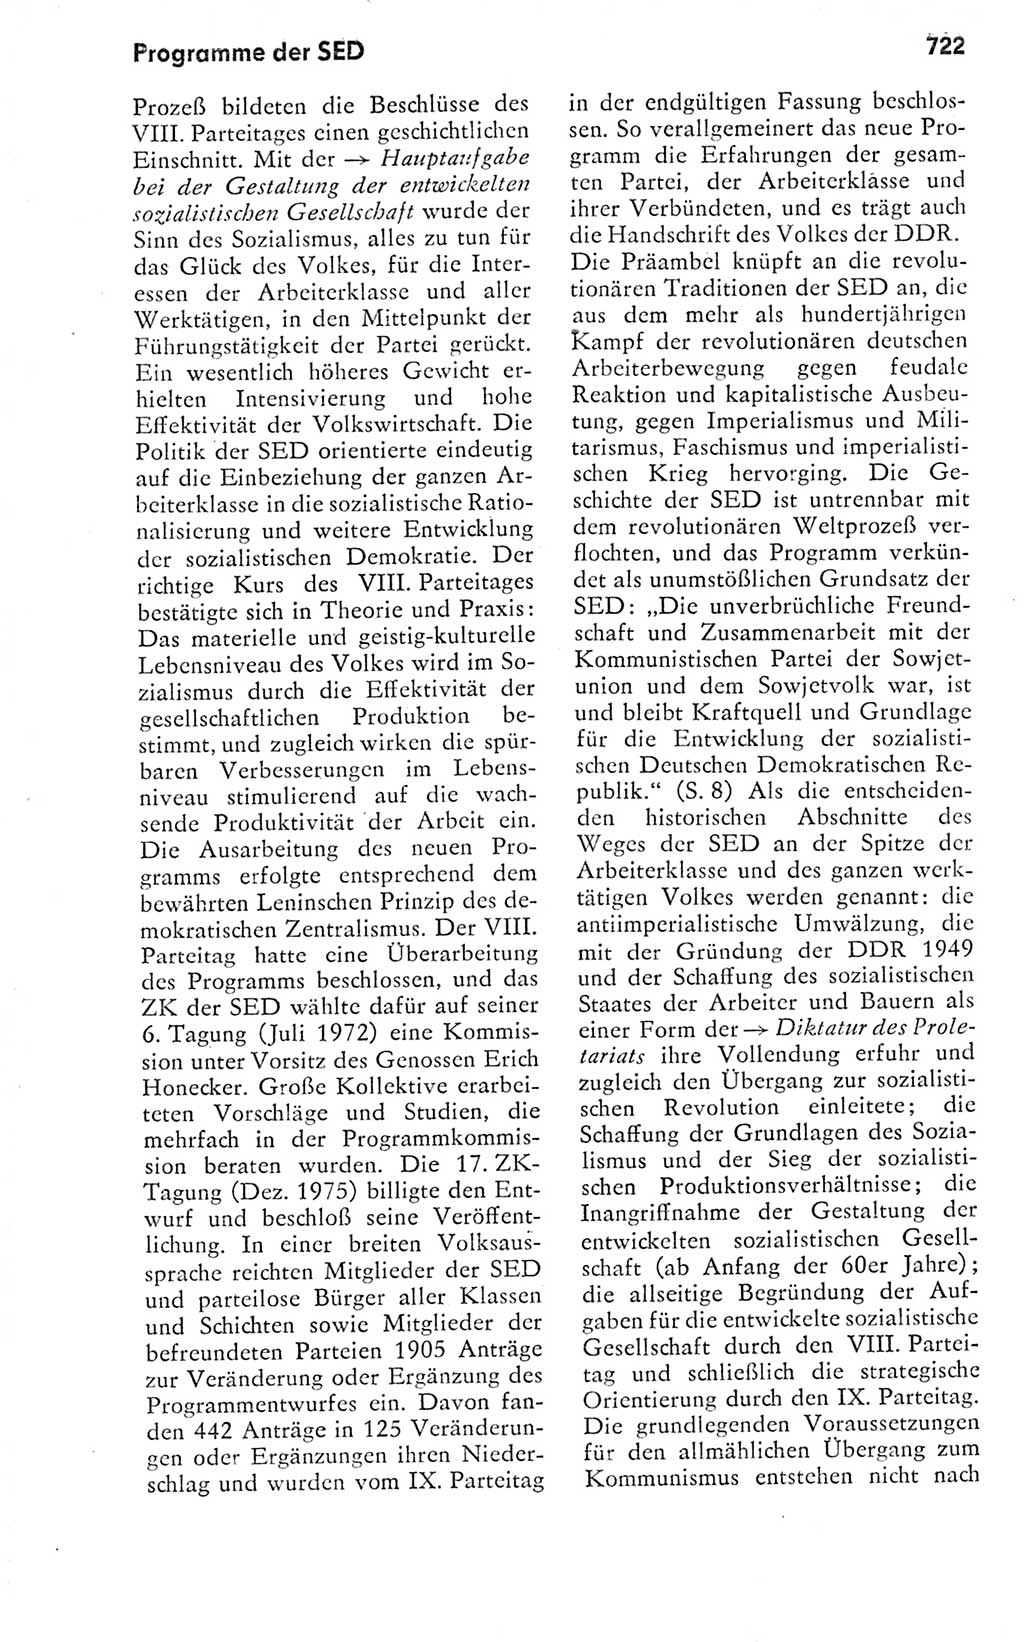 Kleines politisches Wörterbuch [Deutsche Demokratische Republik (DDR)] 1978, Seite 722 (Kl. pol. Wb. DDR 1978, S. 722)